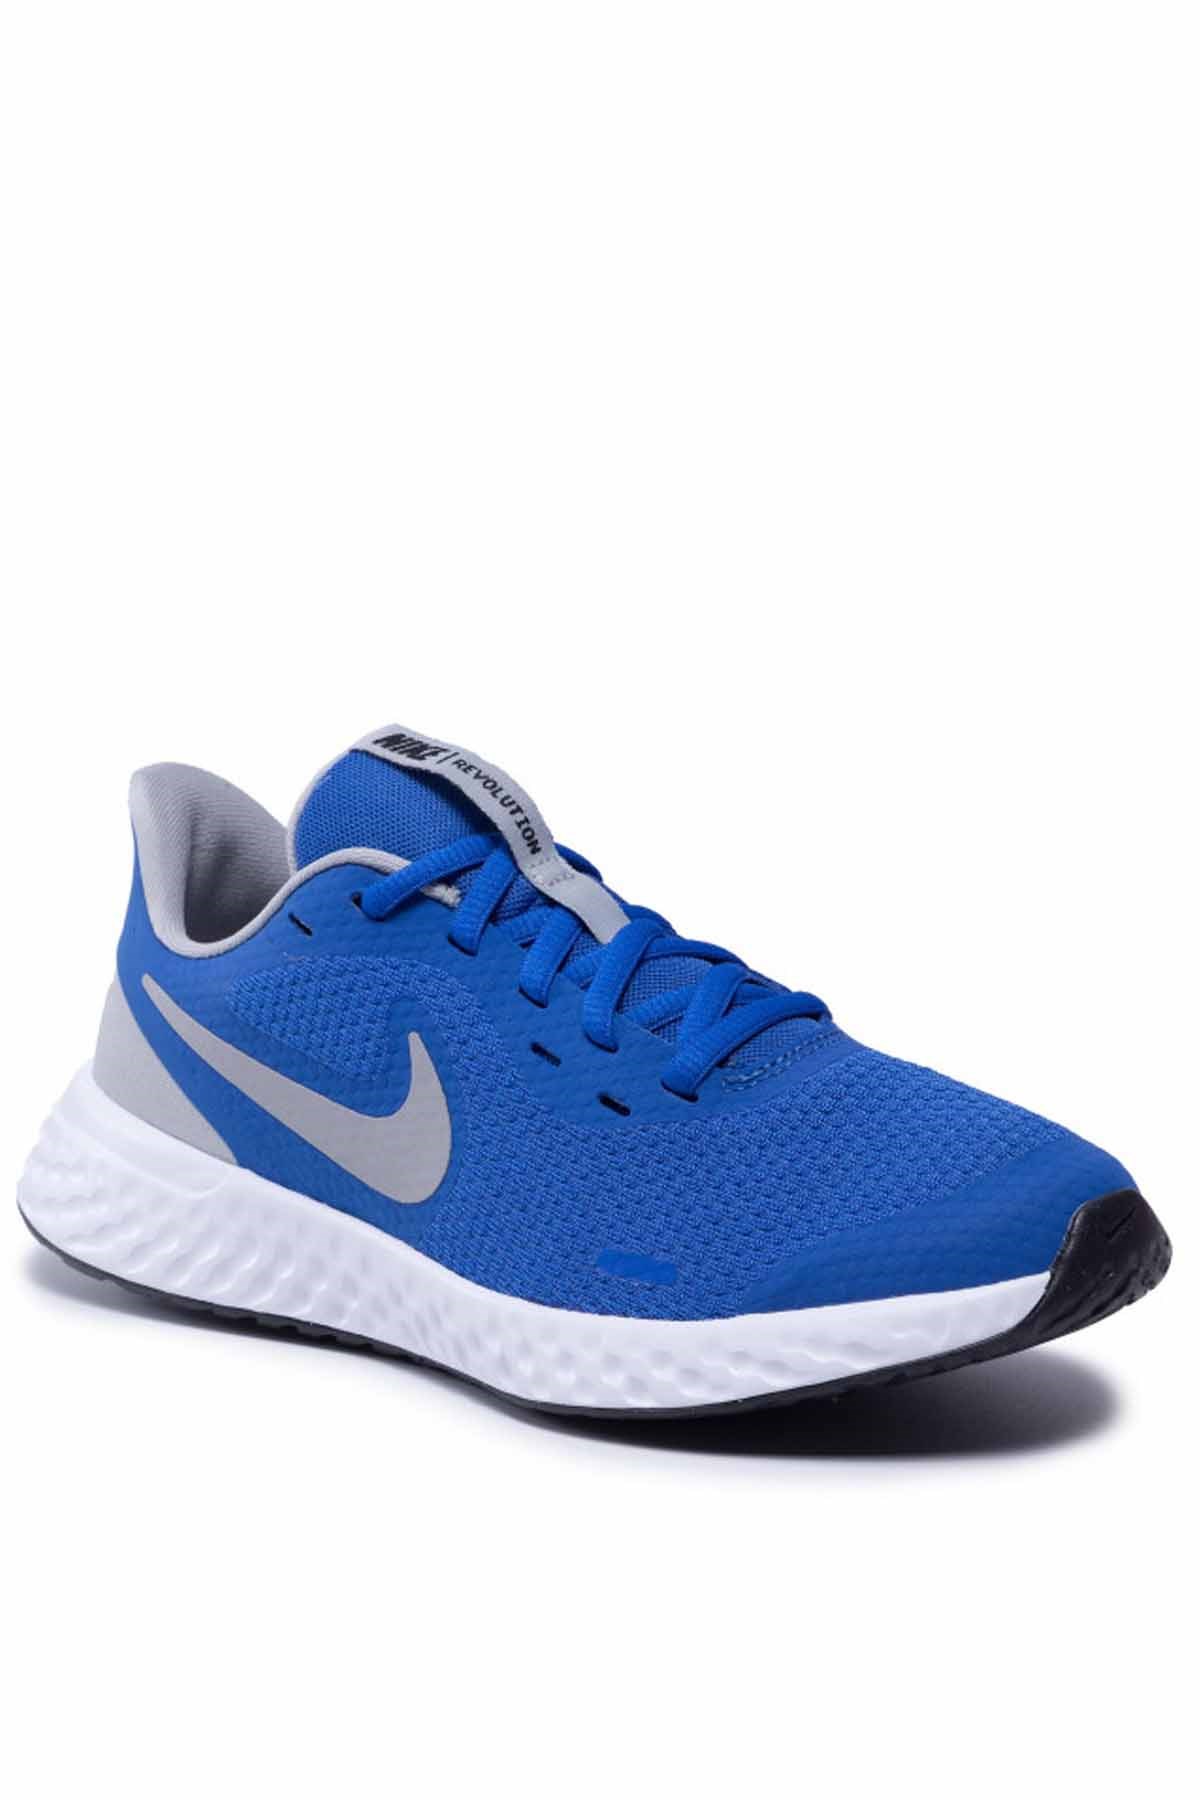 Nike REVOLUTION 5 (GS) Kadın Yürüyüş Koşu Ayakkabı BQ5671-403-MAVİ |  Sahilspor.com